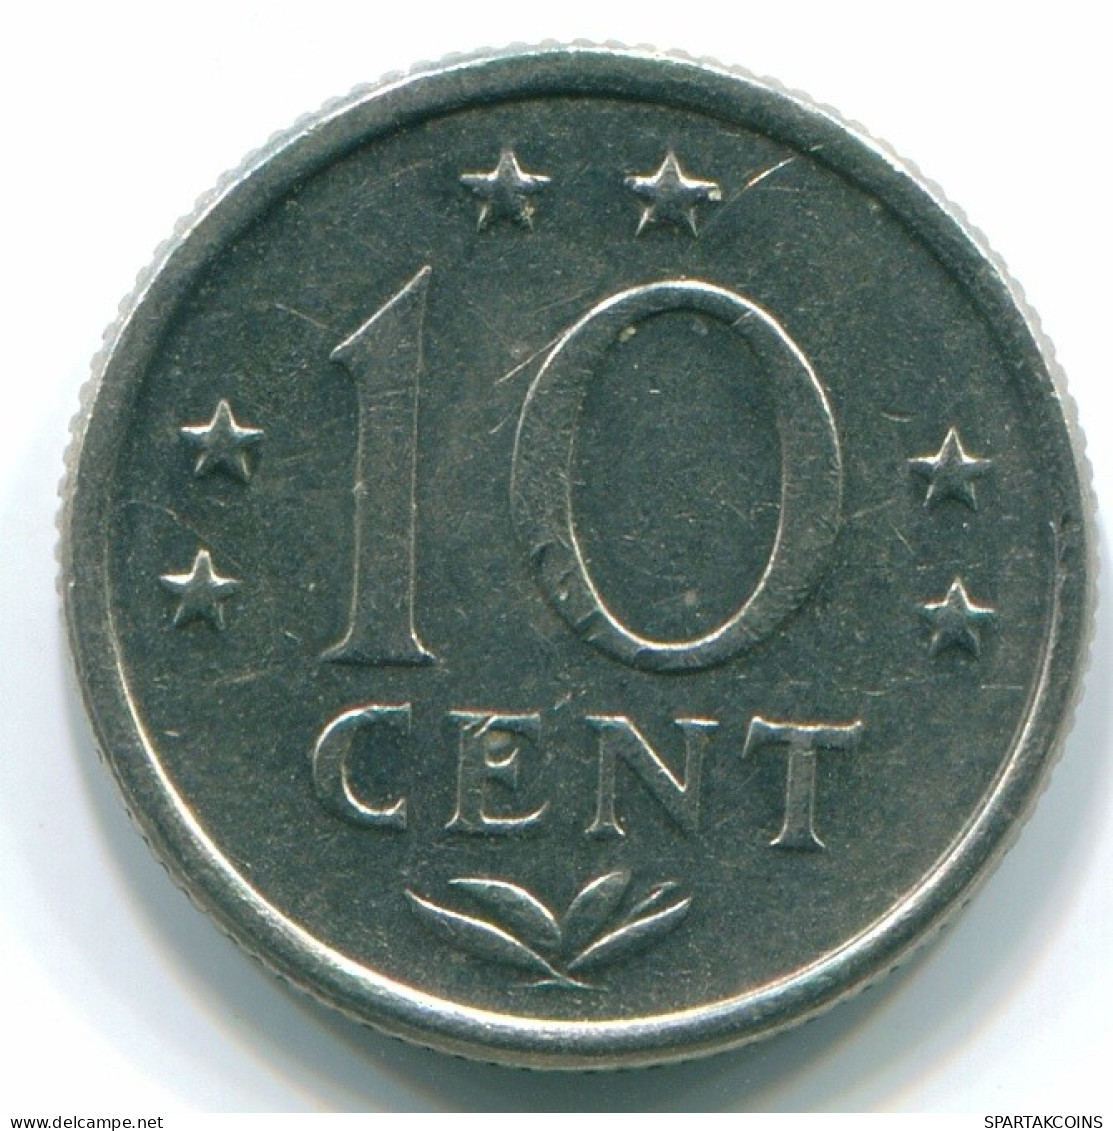 10 CENTS 1971 NIEDERLÄNDISCHE ANTILLEN Nickel Koloniale Münze #S13404.D.A - Antilles Néerlandaises